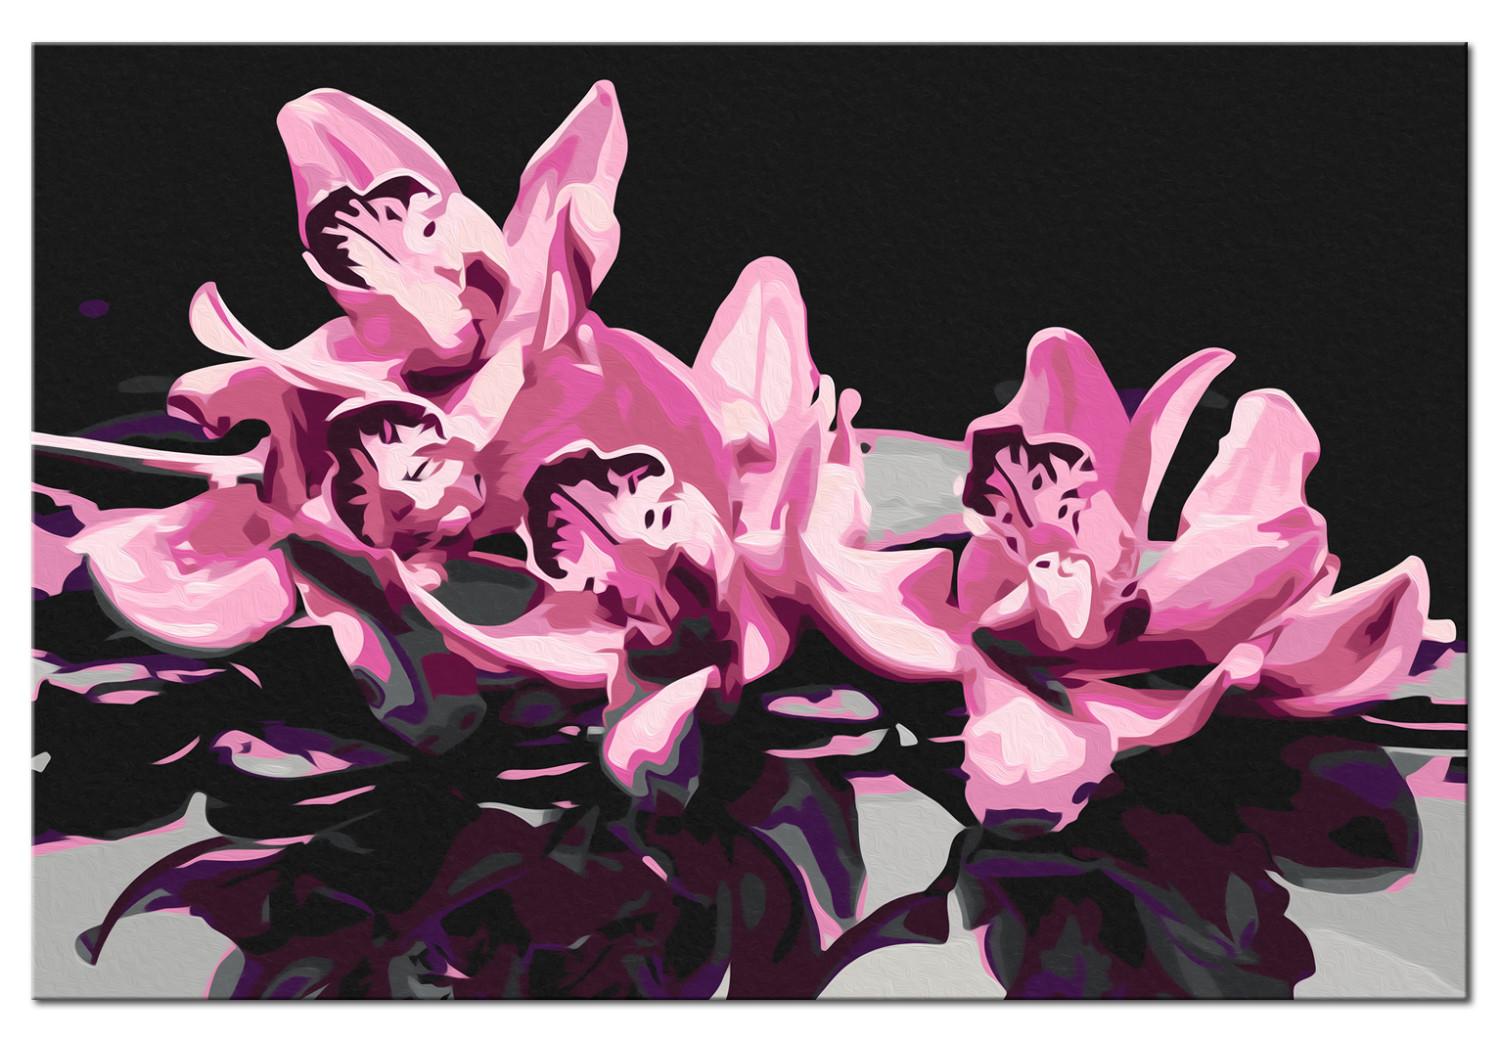 Cuadro para pintar por números Orquídea rosa (fondo negro)